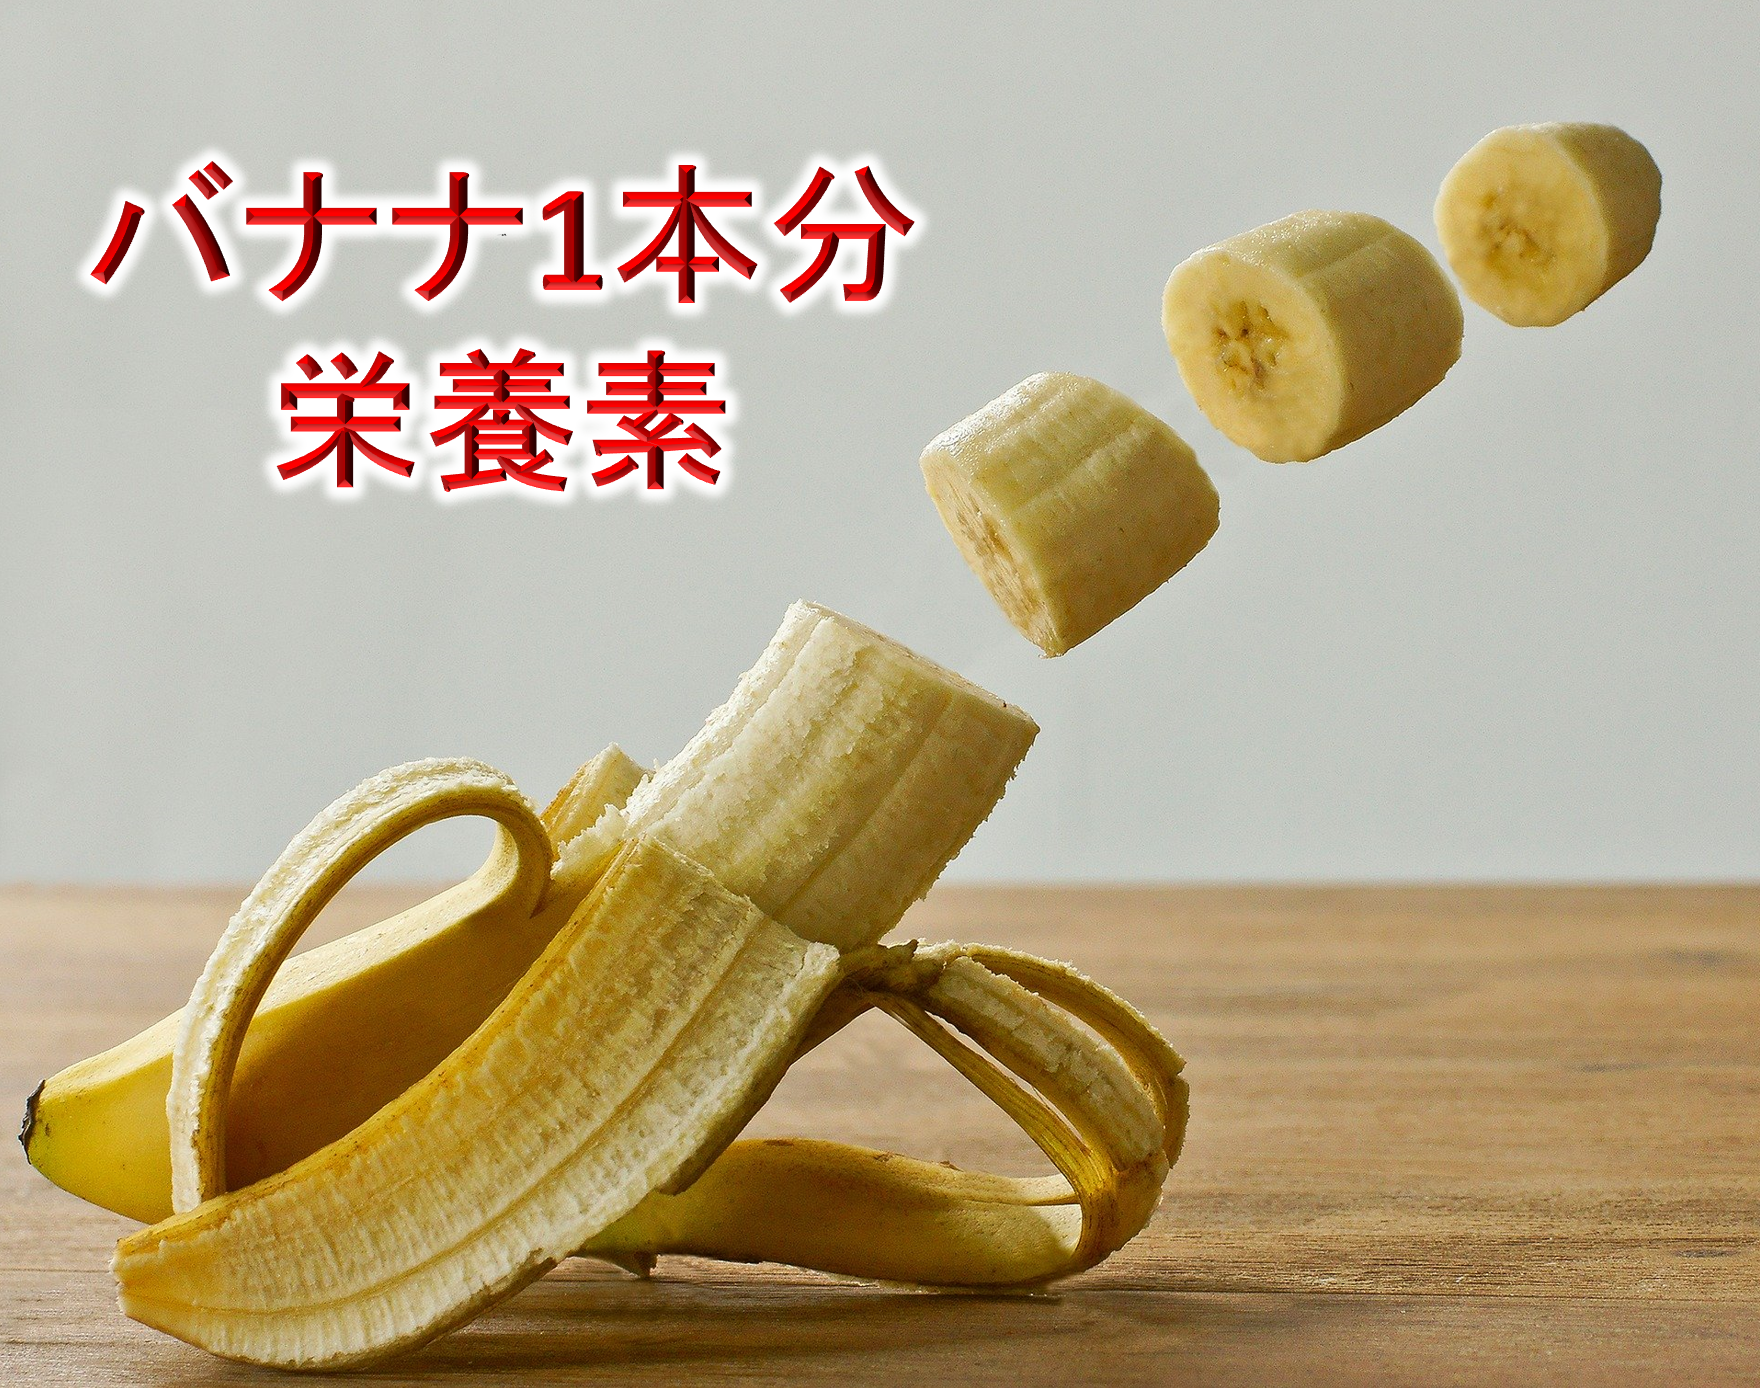 バナナ1本分の栄養素